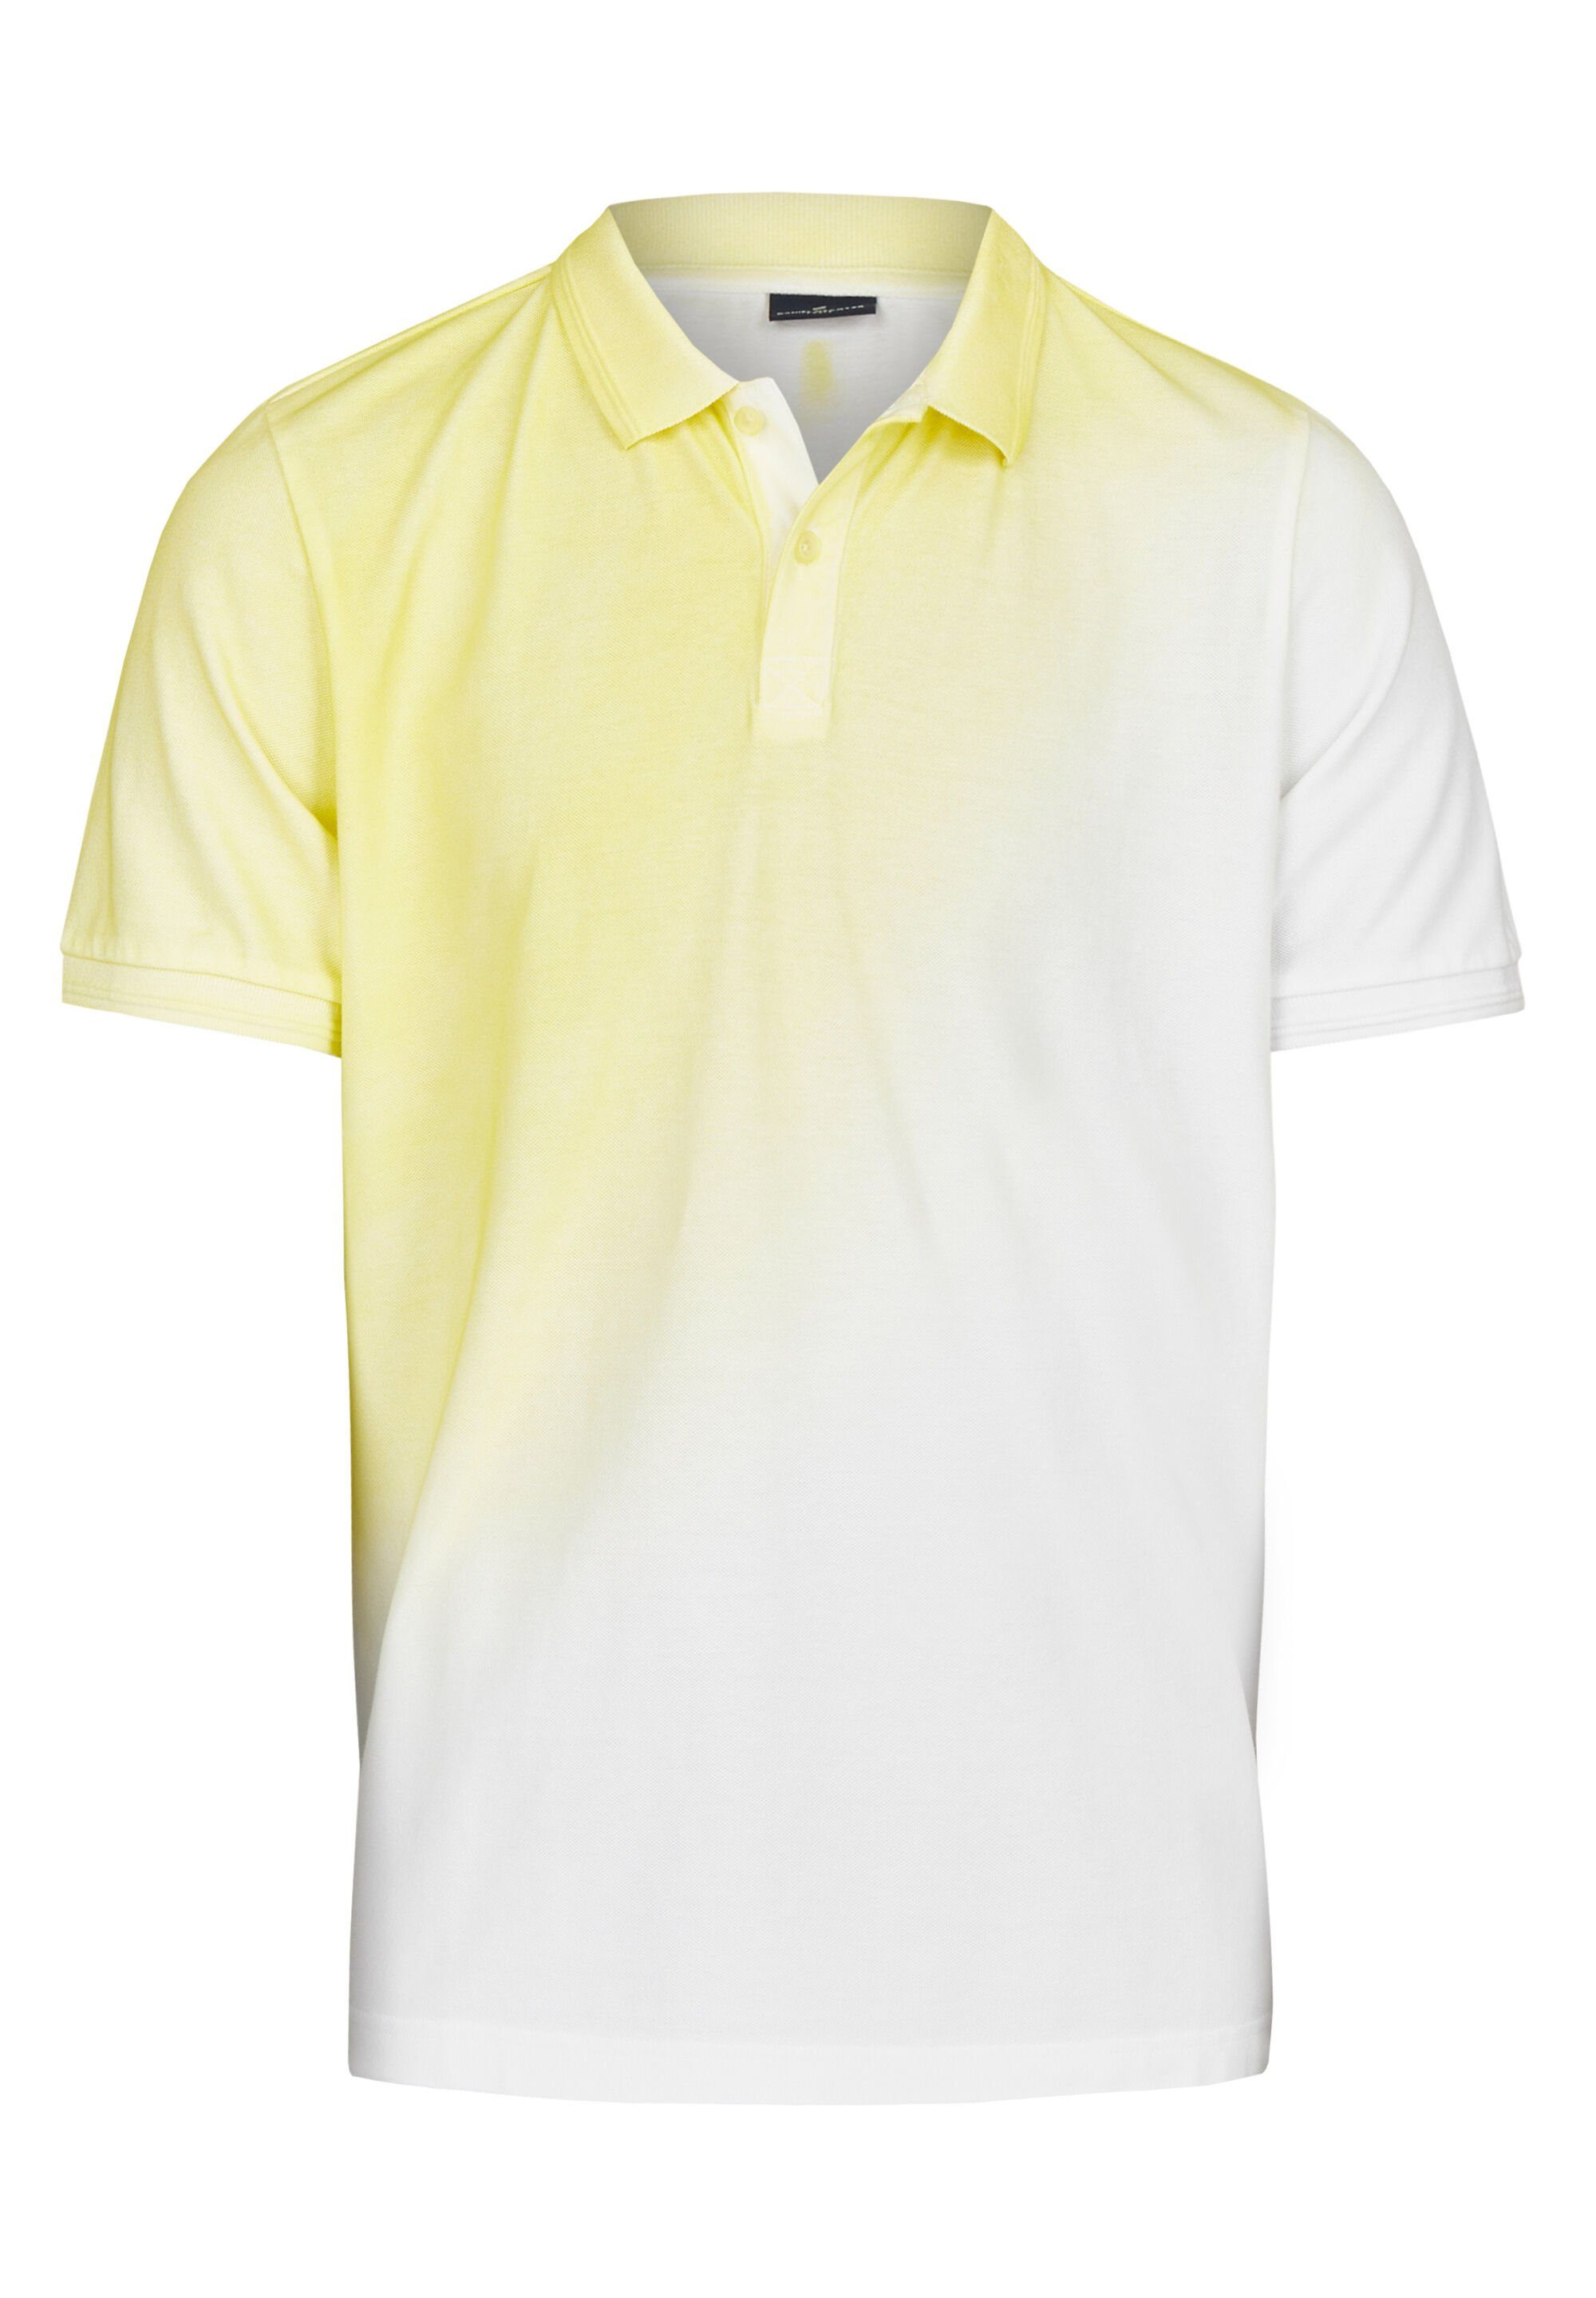 HECHTER PARIS Poloshirt mit ausgefallenem vanilla Spray-Dyed-Effekt